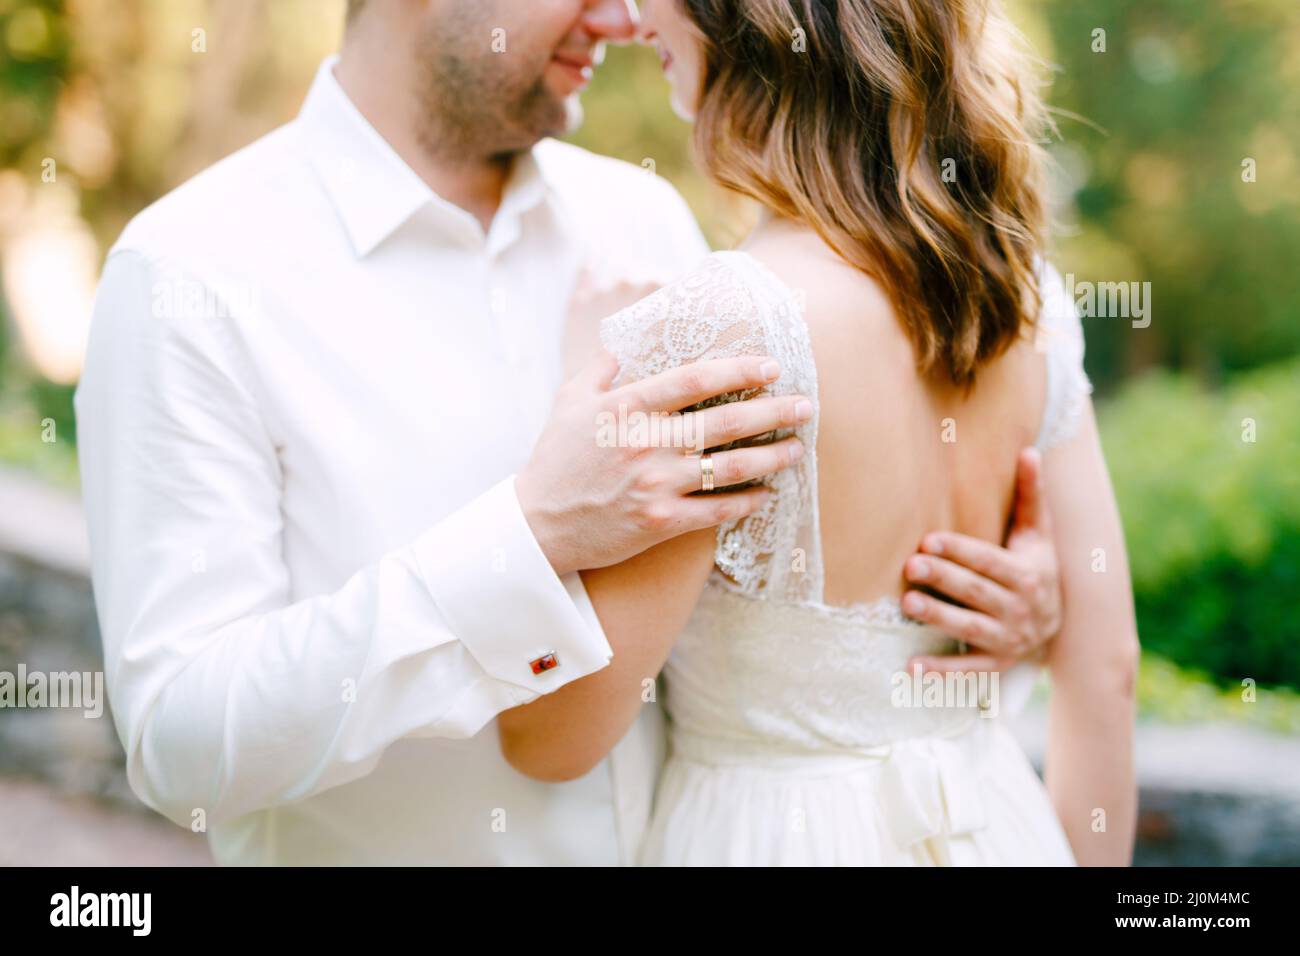 Die Braut und der Bräutigam umarmen sich im Park, der Bräutigam legte seine Hände auf den Rücken der Braut Stockfoto